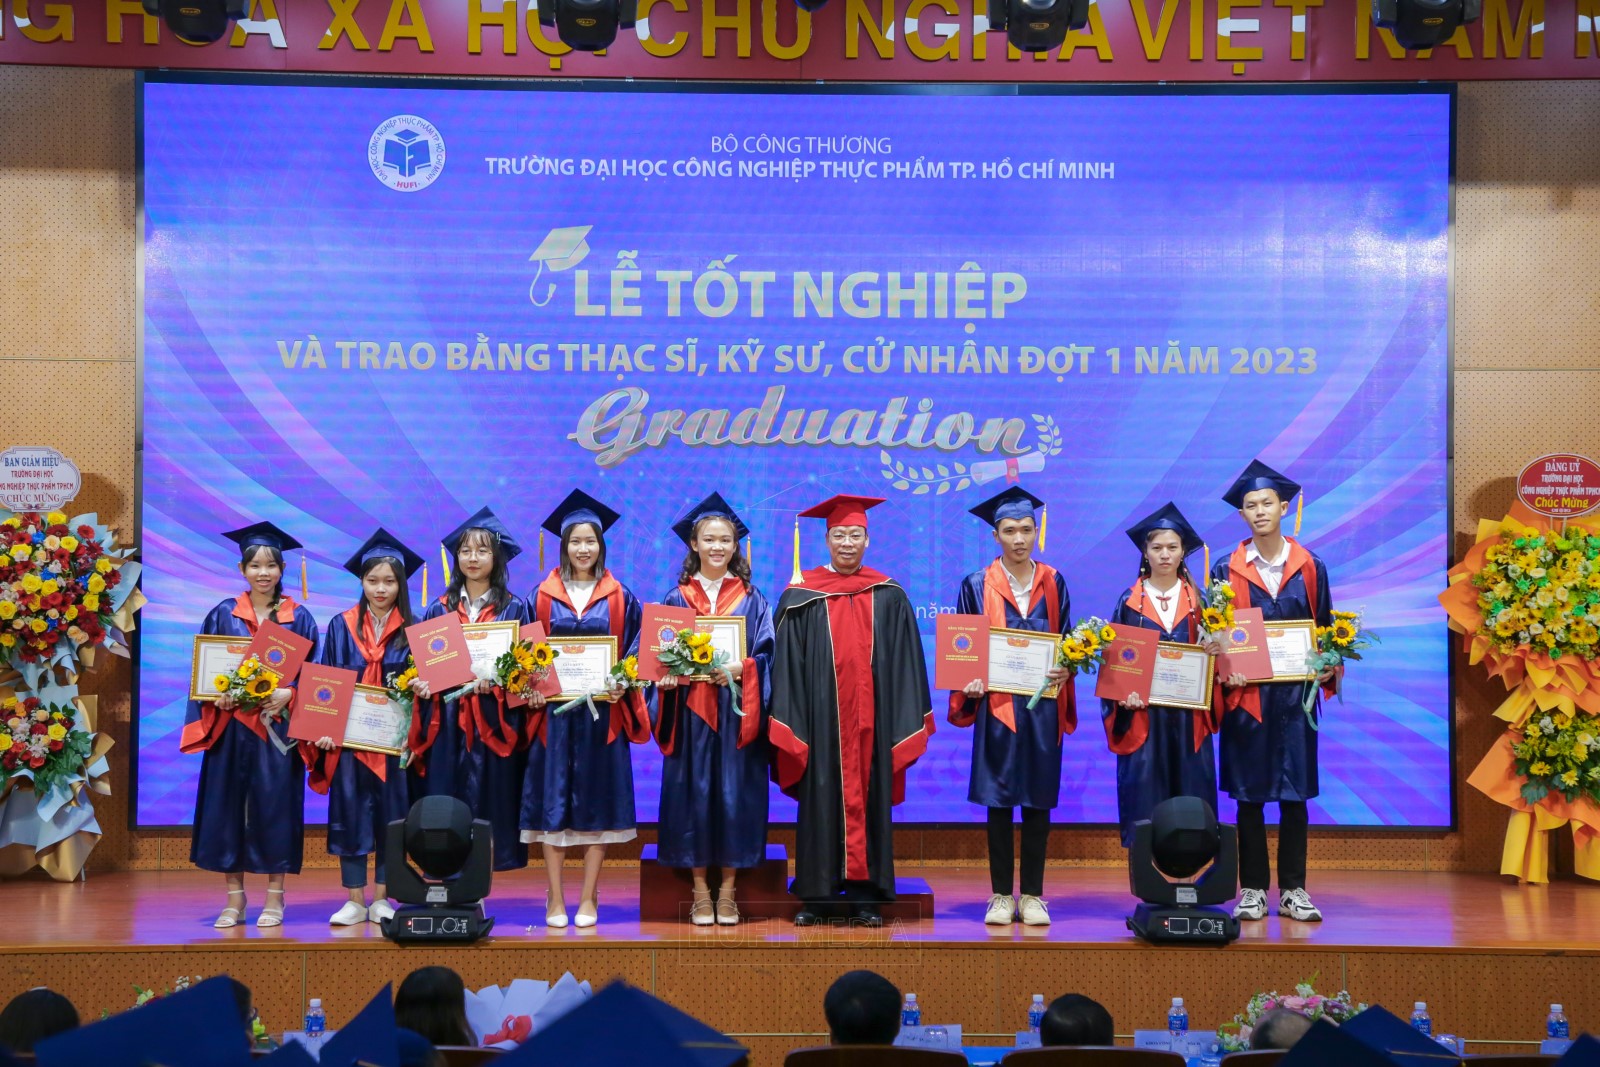 Lễ tốt nghiệp và trao bằng thạc sĩ, kỹ sư, cử nhân đợt 1 năm 2023